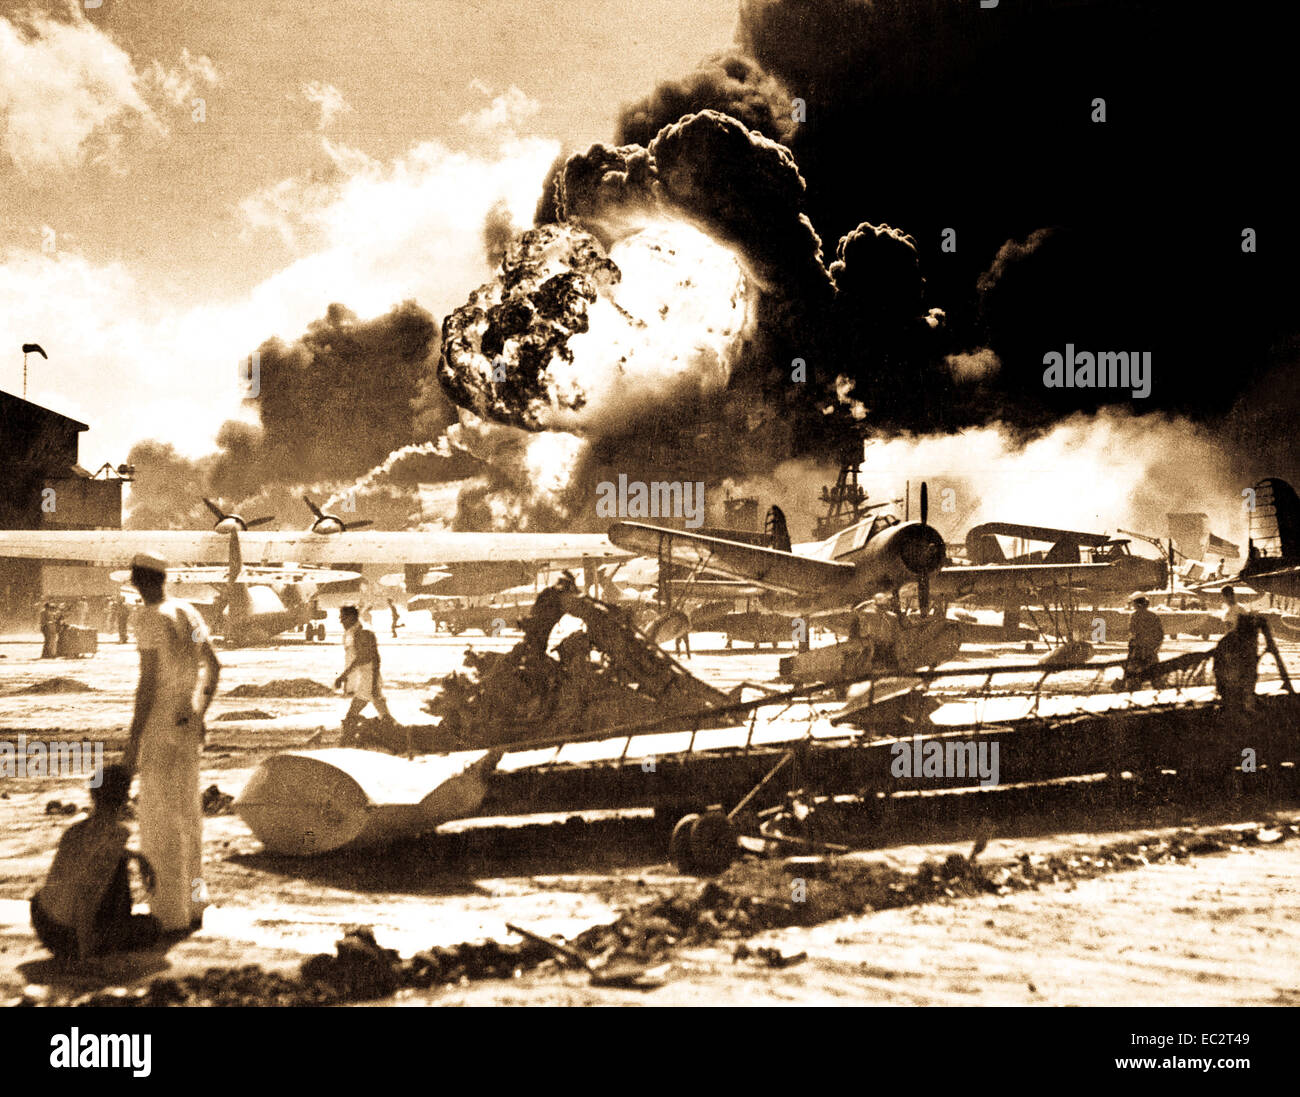 Japonais capturés photographie prise lors de l'attaque sur Pearl Harbor, le 7 décembre 1941. dans la distance, la fumée s'élève de hickam field. (Marine) Banque D'Images